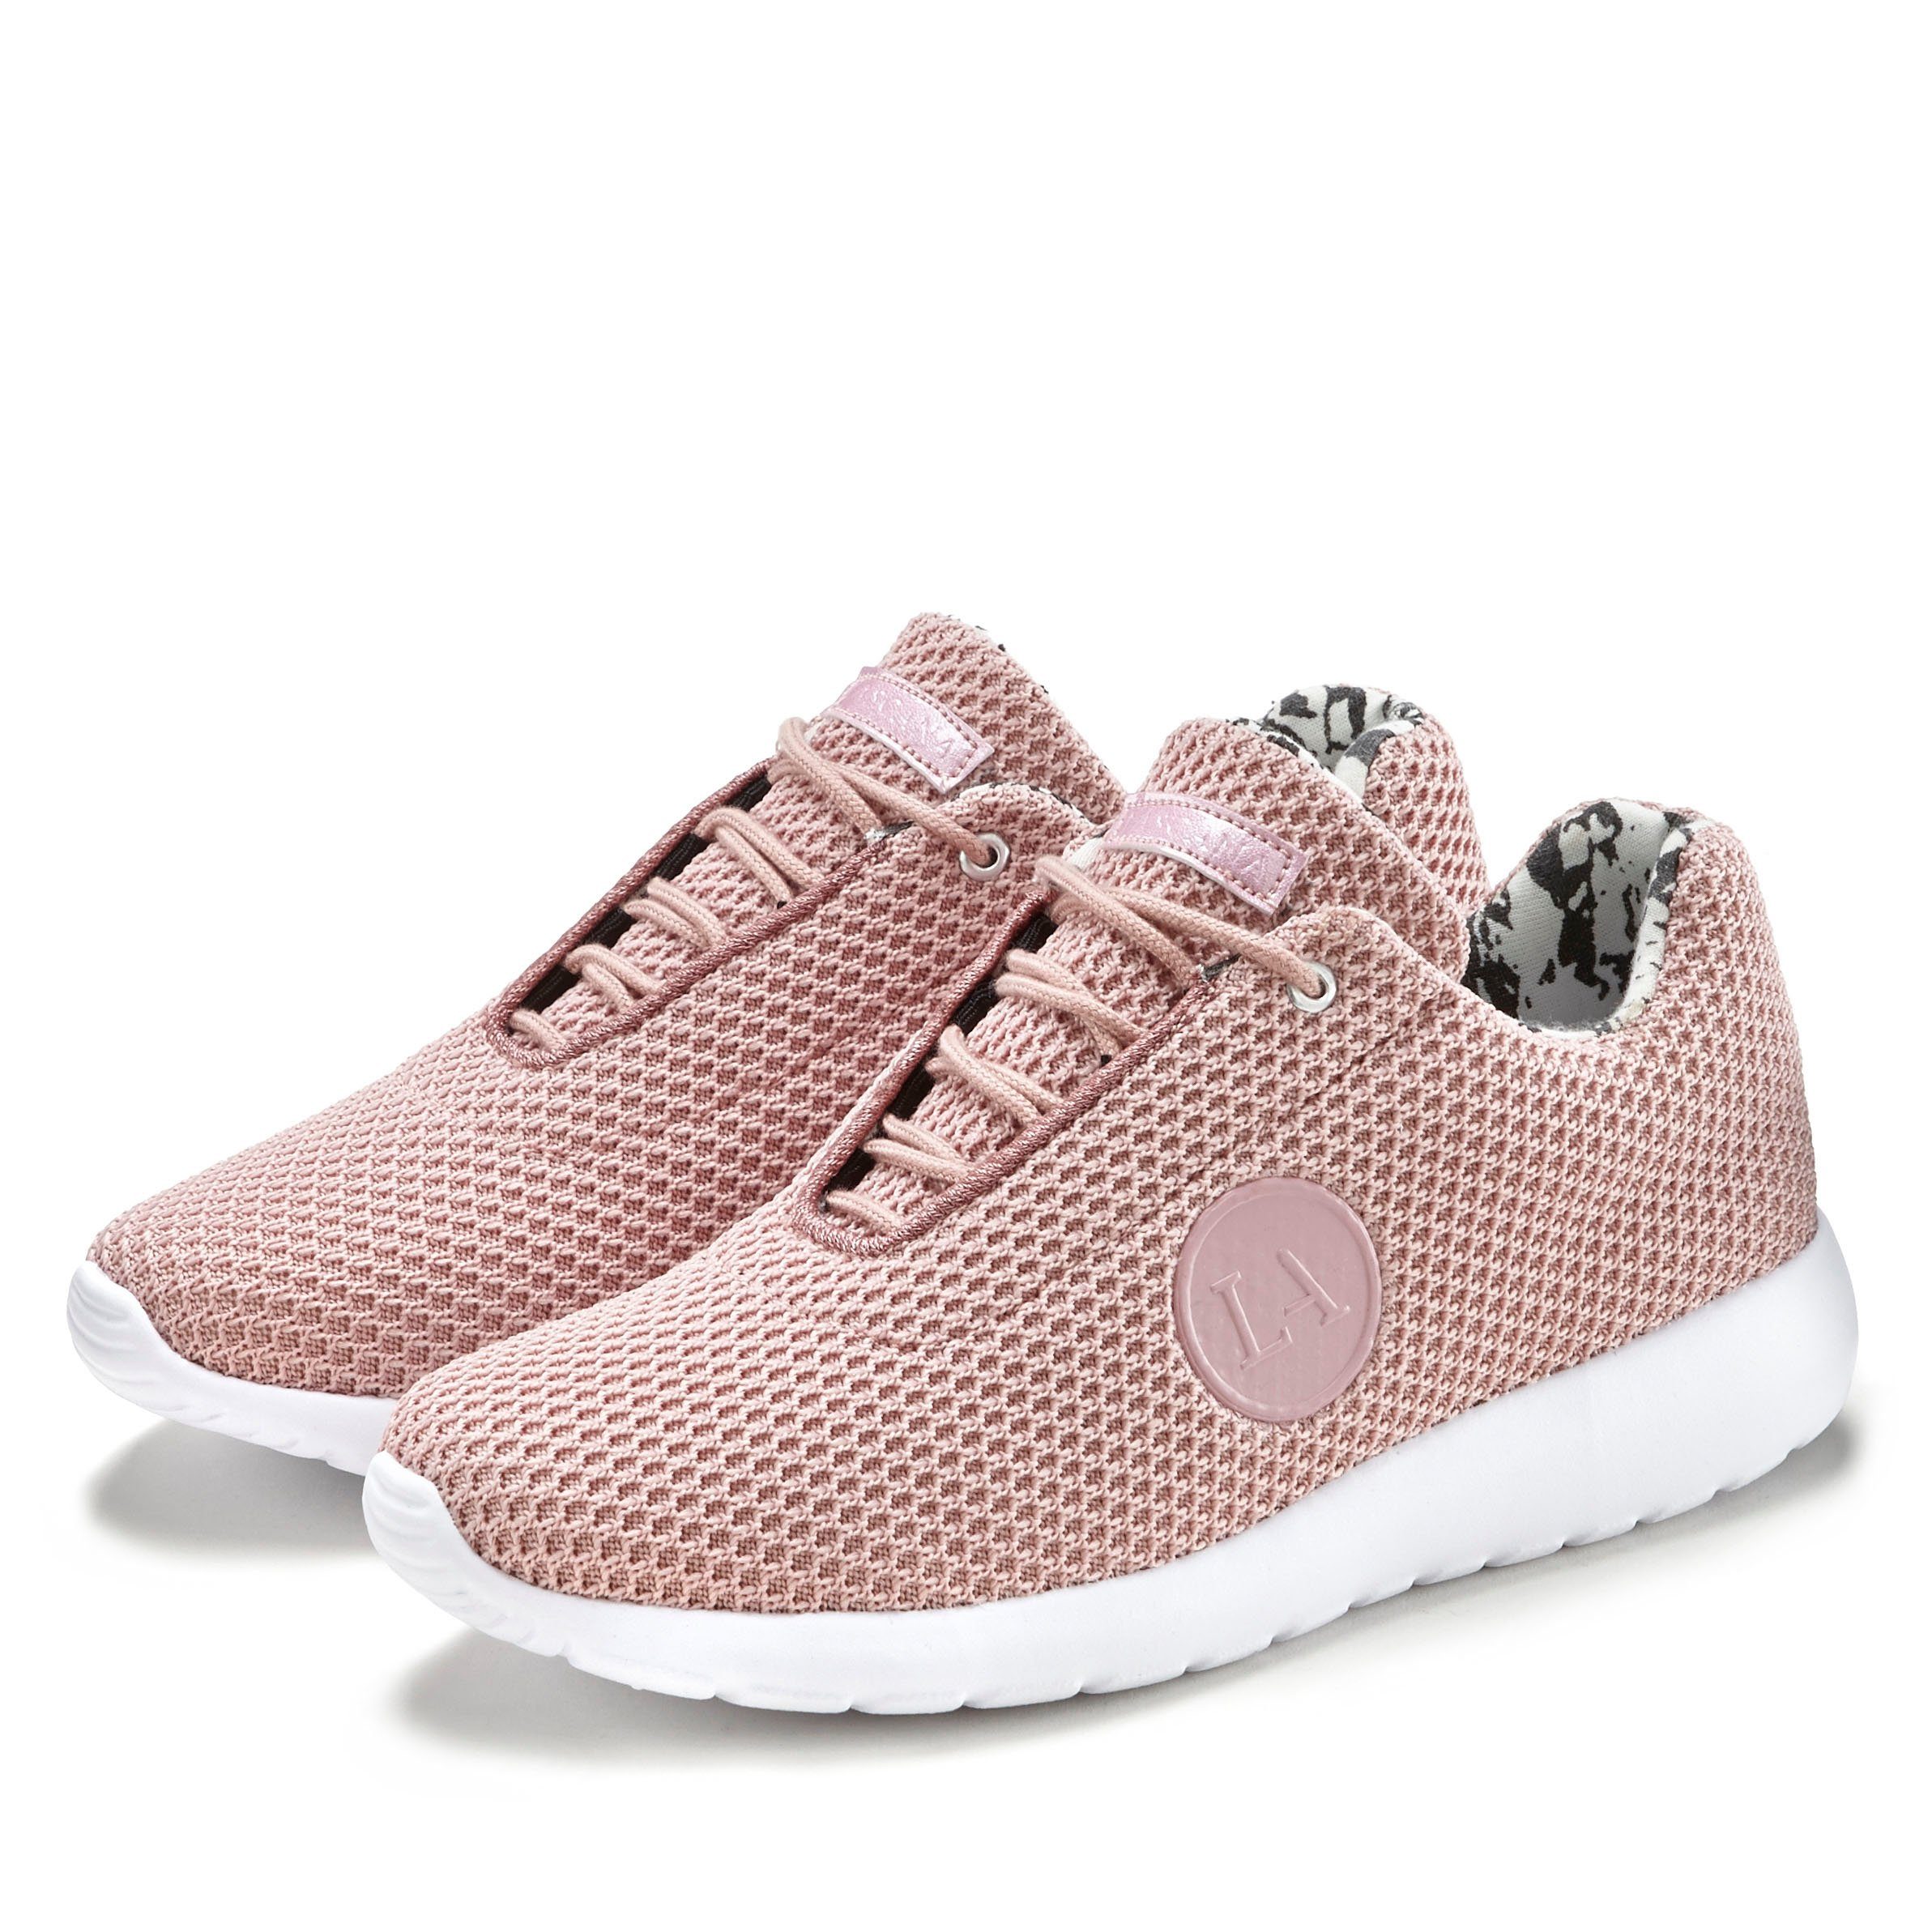 Rosa Damenschuhe online kaufen » Pinke Schuhe Damen-| OTTO